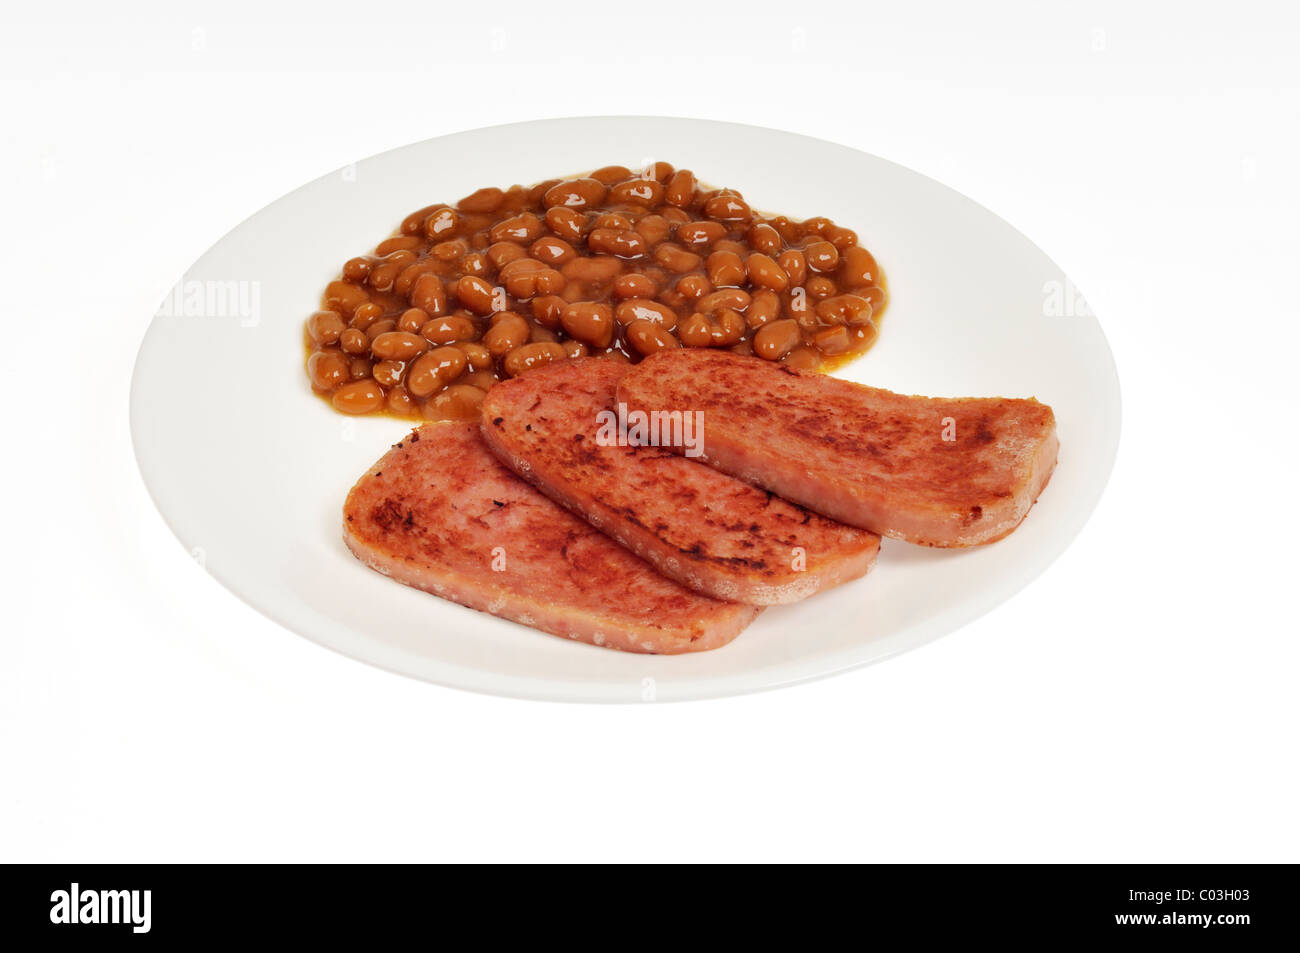 Grillé cuit Hormel spam avec Pork and Beans sur plaque blanche avec fond blanc, découpe. USA Banque D'Images